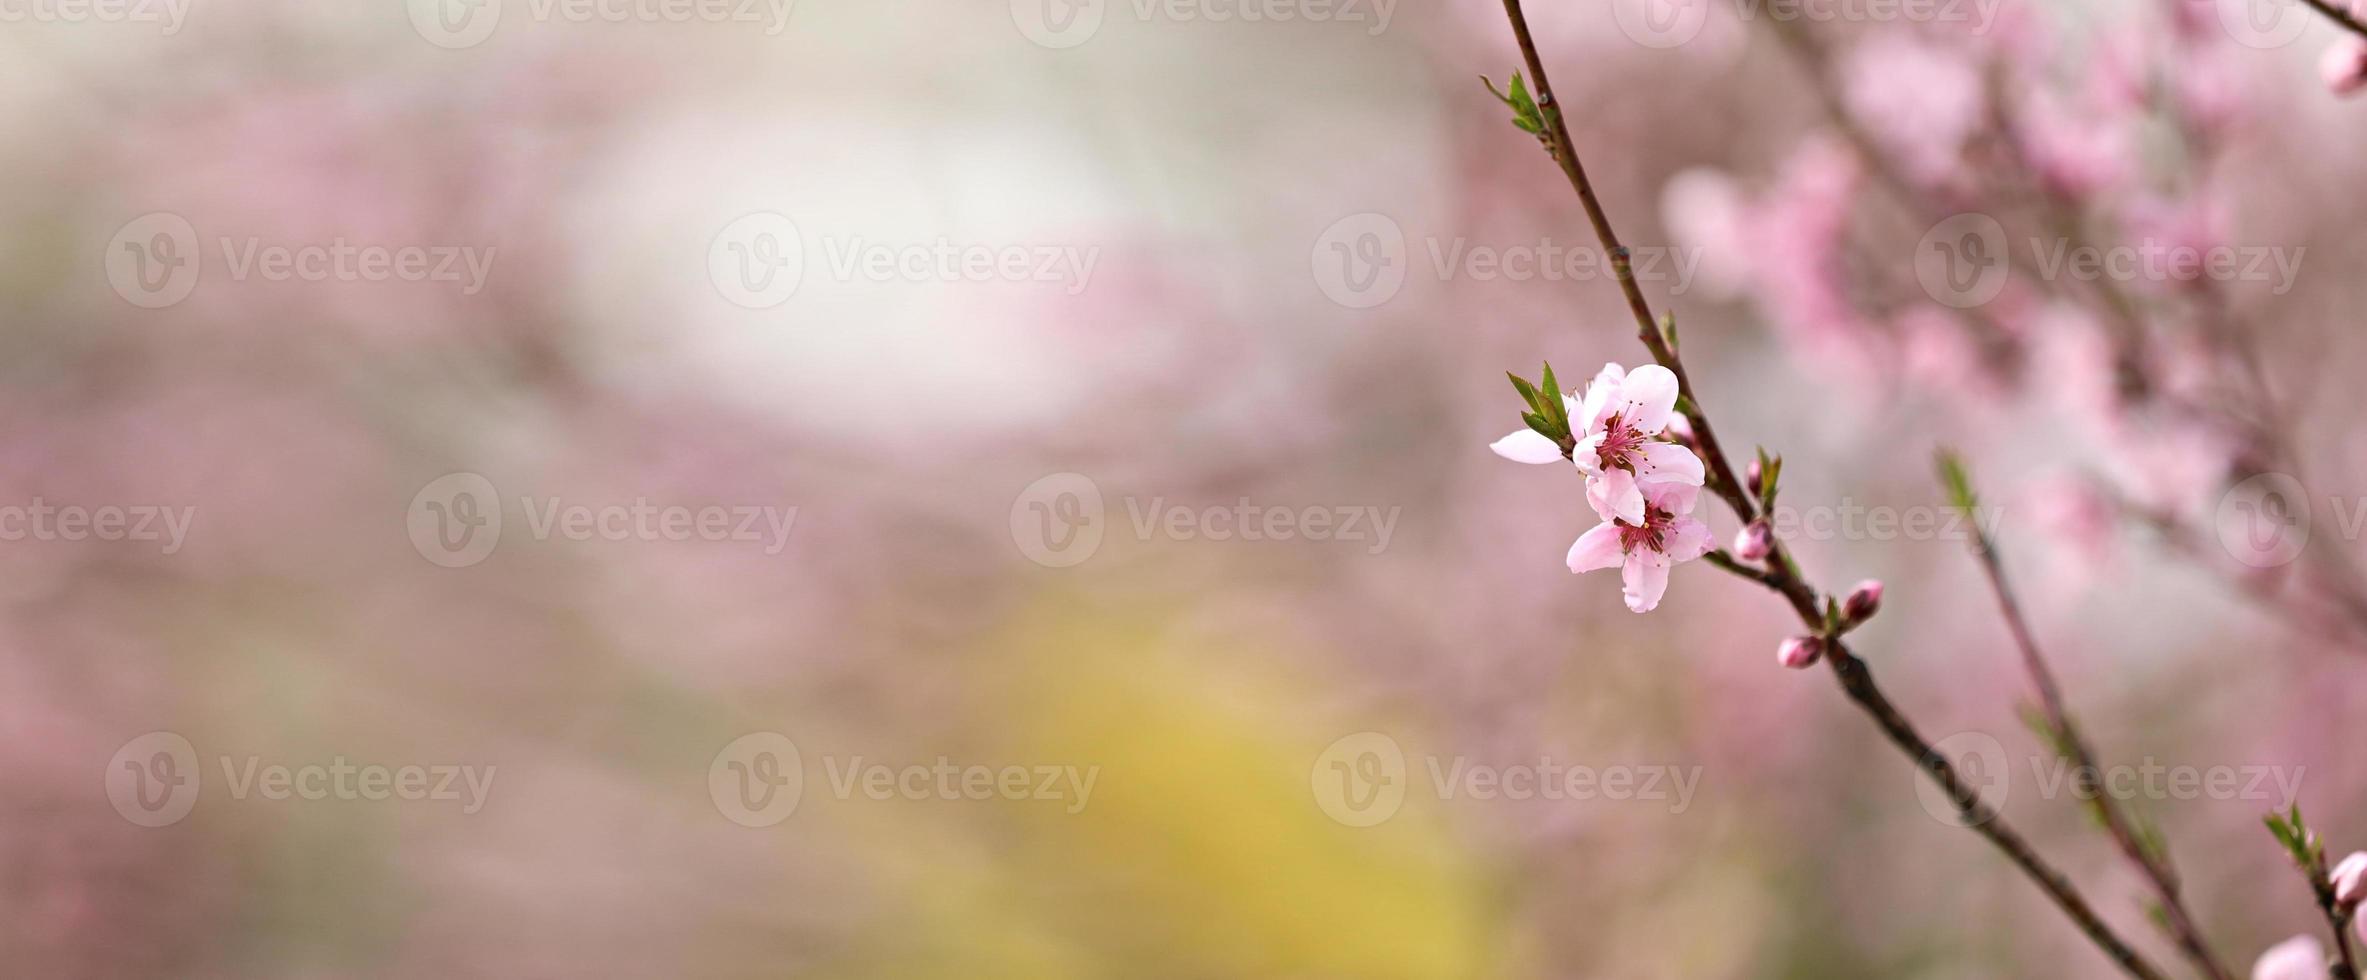 flor de durazno rosa florece en la temporada de primavera. hermosas flores de durazno se mecen en el viento. hermosas flores de melocotón de color rosa brillante en las ramas. de cerca foto